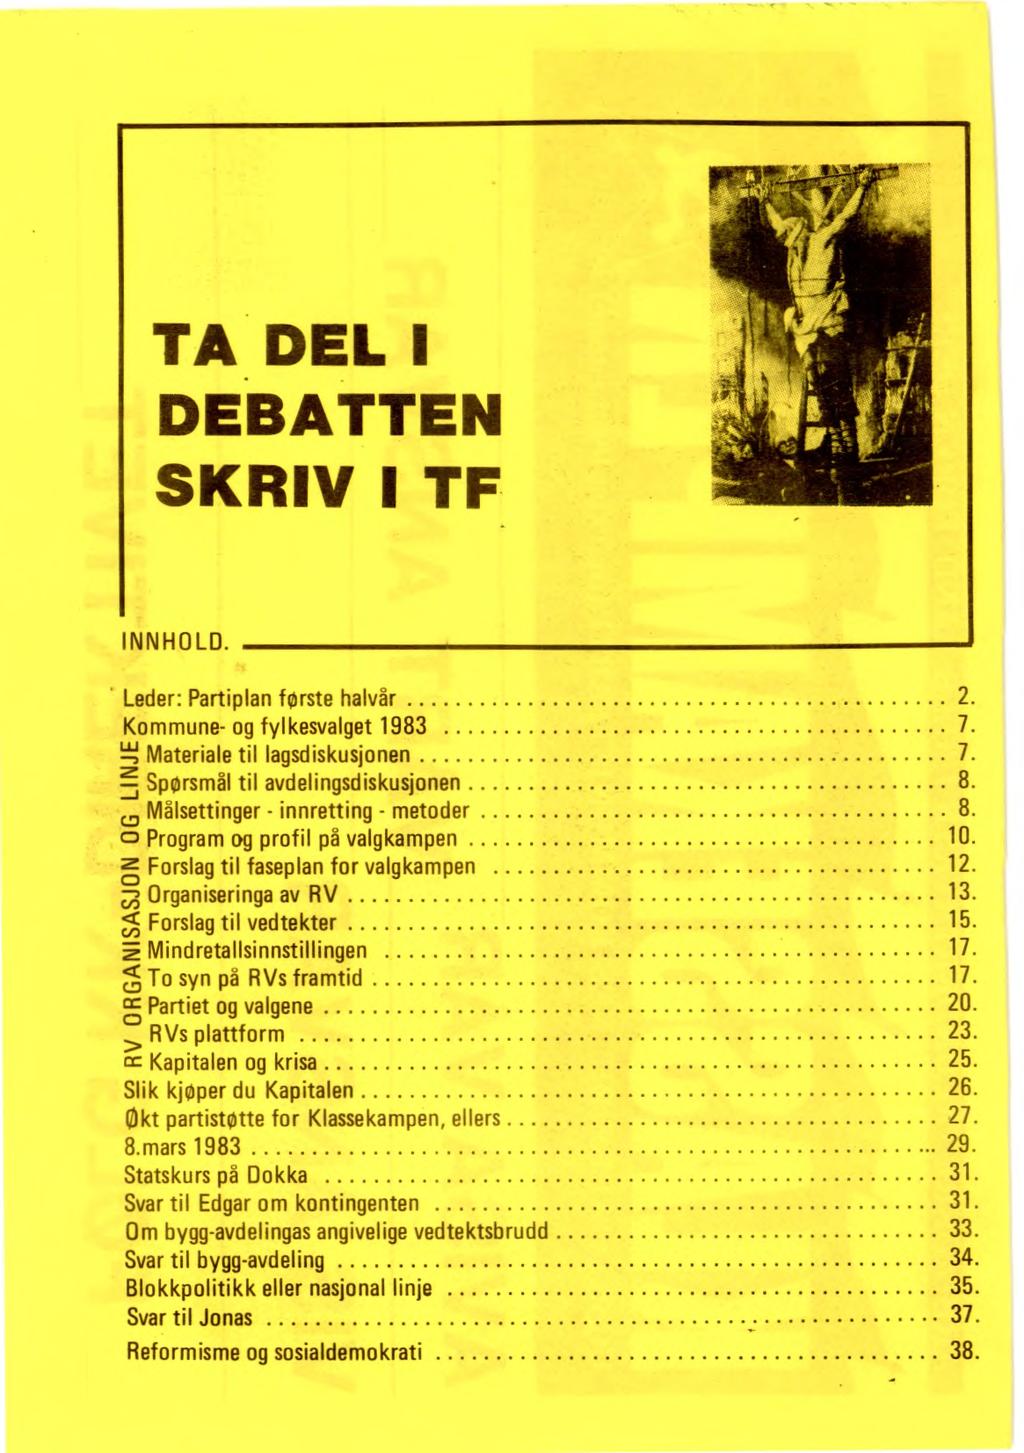 Leder: Partiplan første halvår 2. Kommune- og fylkesvalget 1983 7. "1 --, Materiale til lagsdiskusjonen Spørsmål til avdelingsdiskusjonen Målsettinger - innretting - metoder 8.